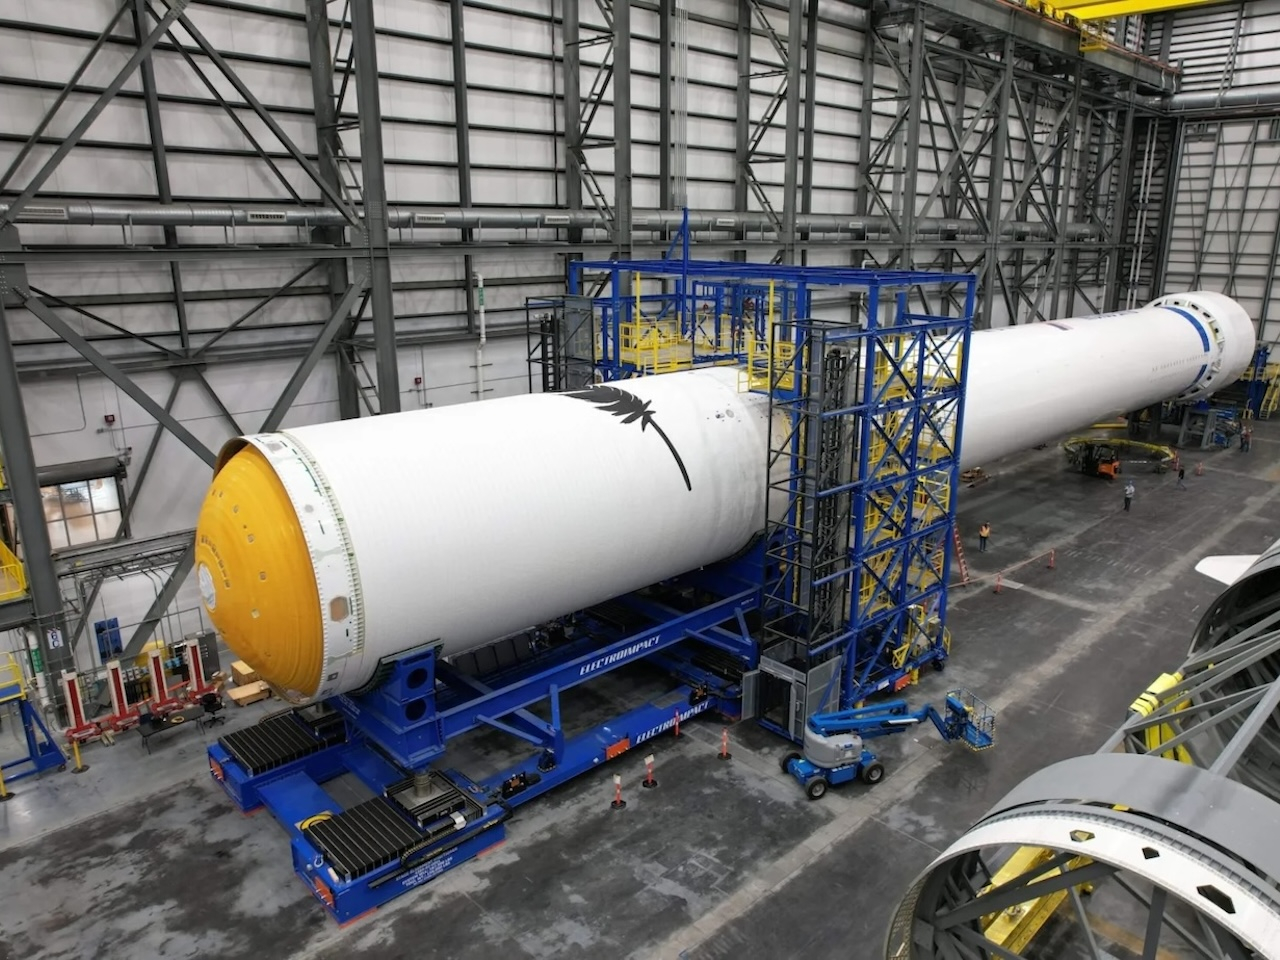 米ブルーオリジン、巨大ロケット「ニューグレン」の統合研究で宇宙軍から資金